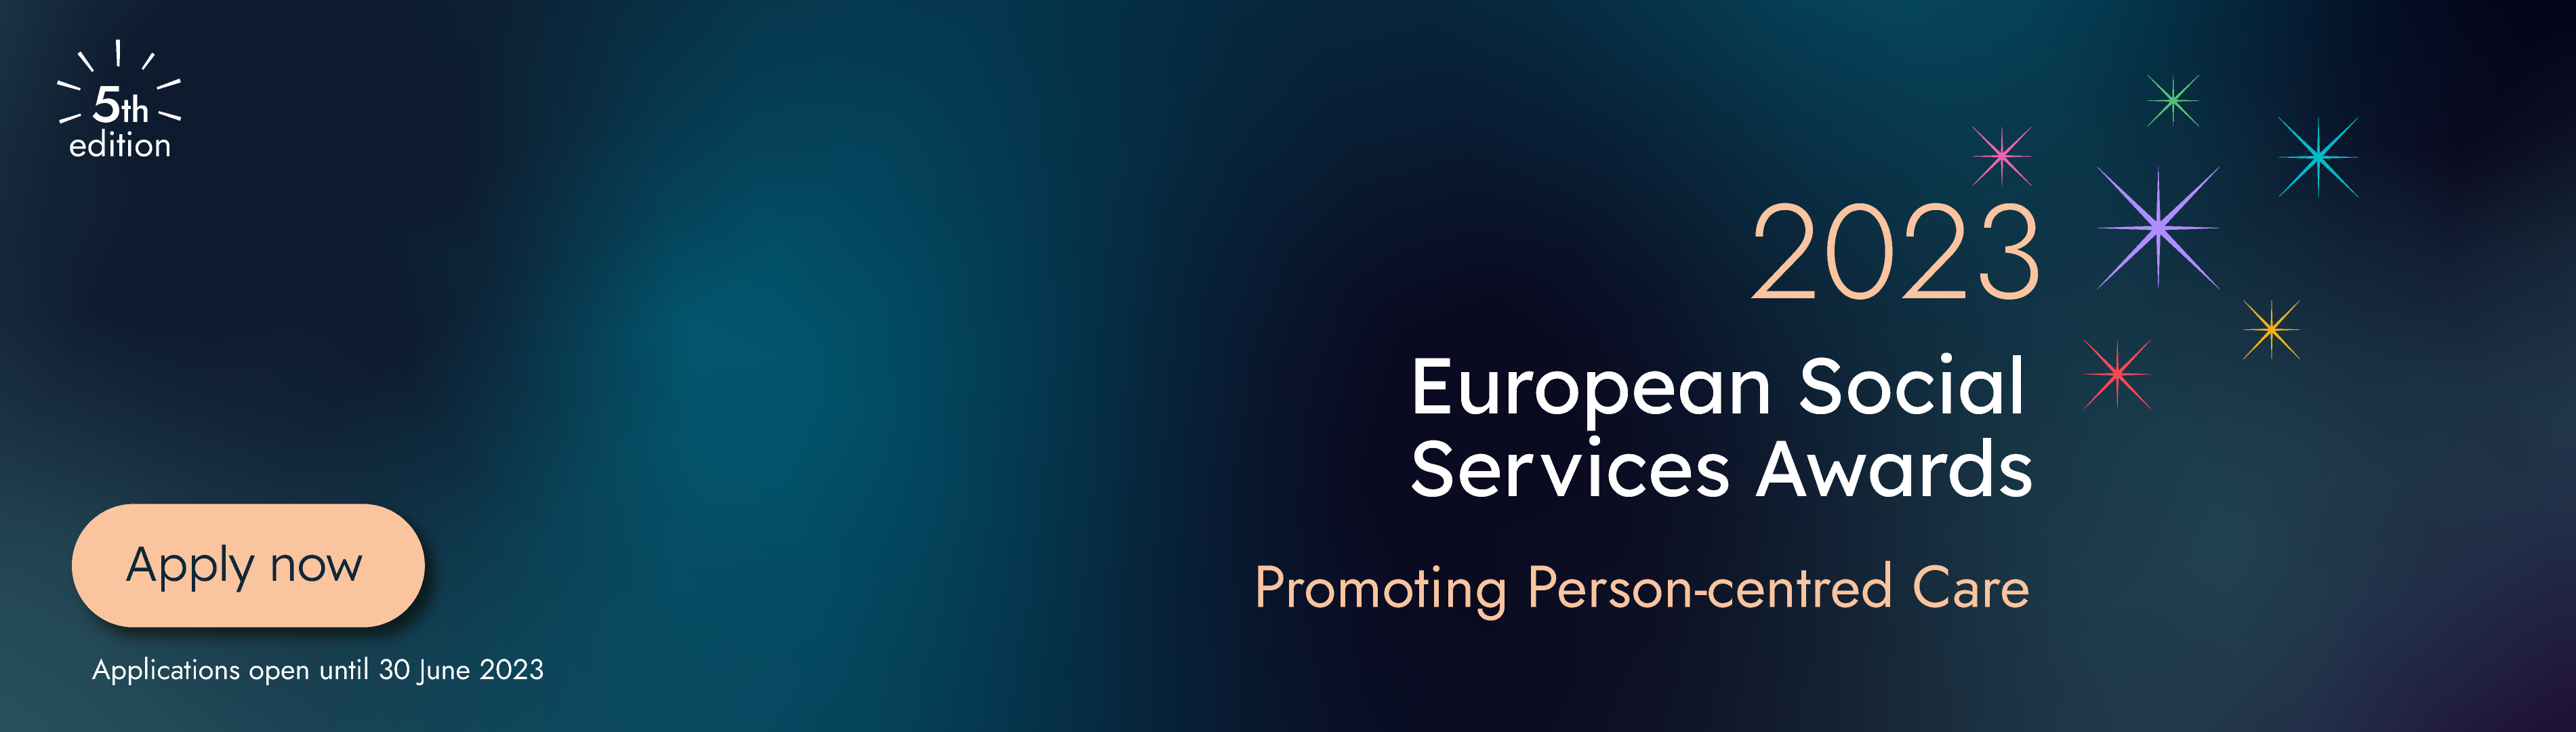 European Social Services Awards 2023 Apply Now